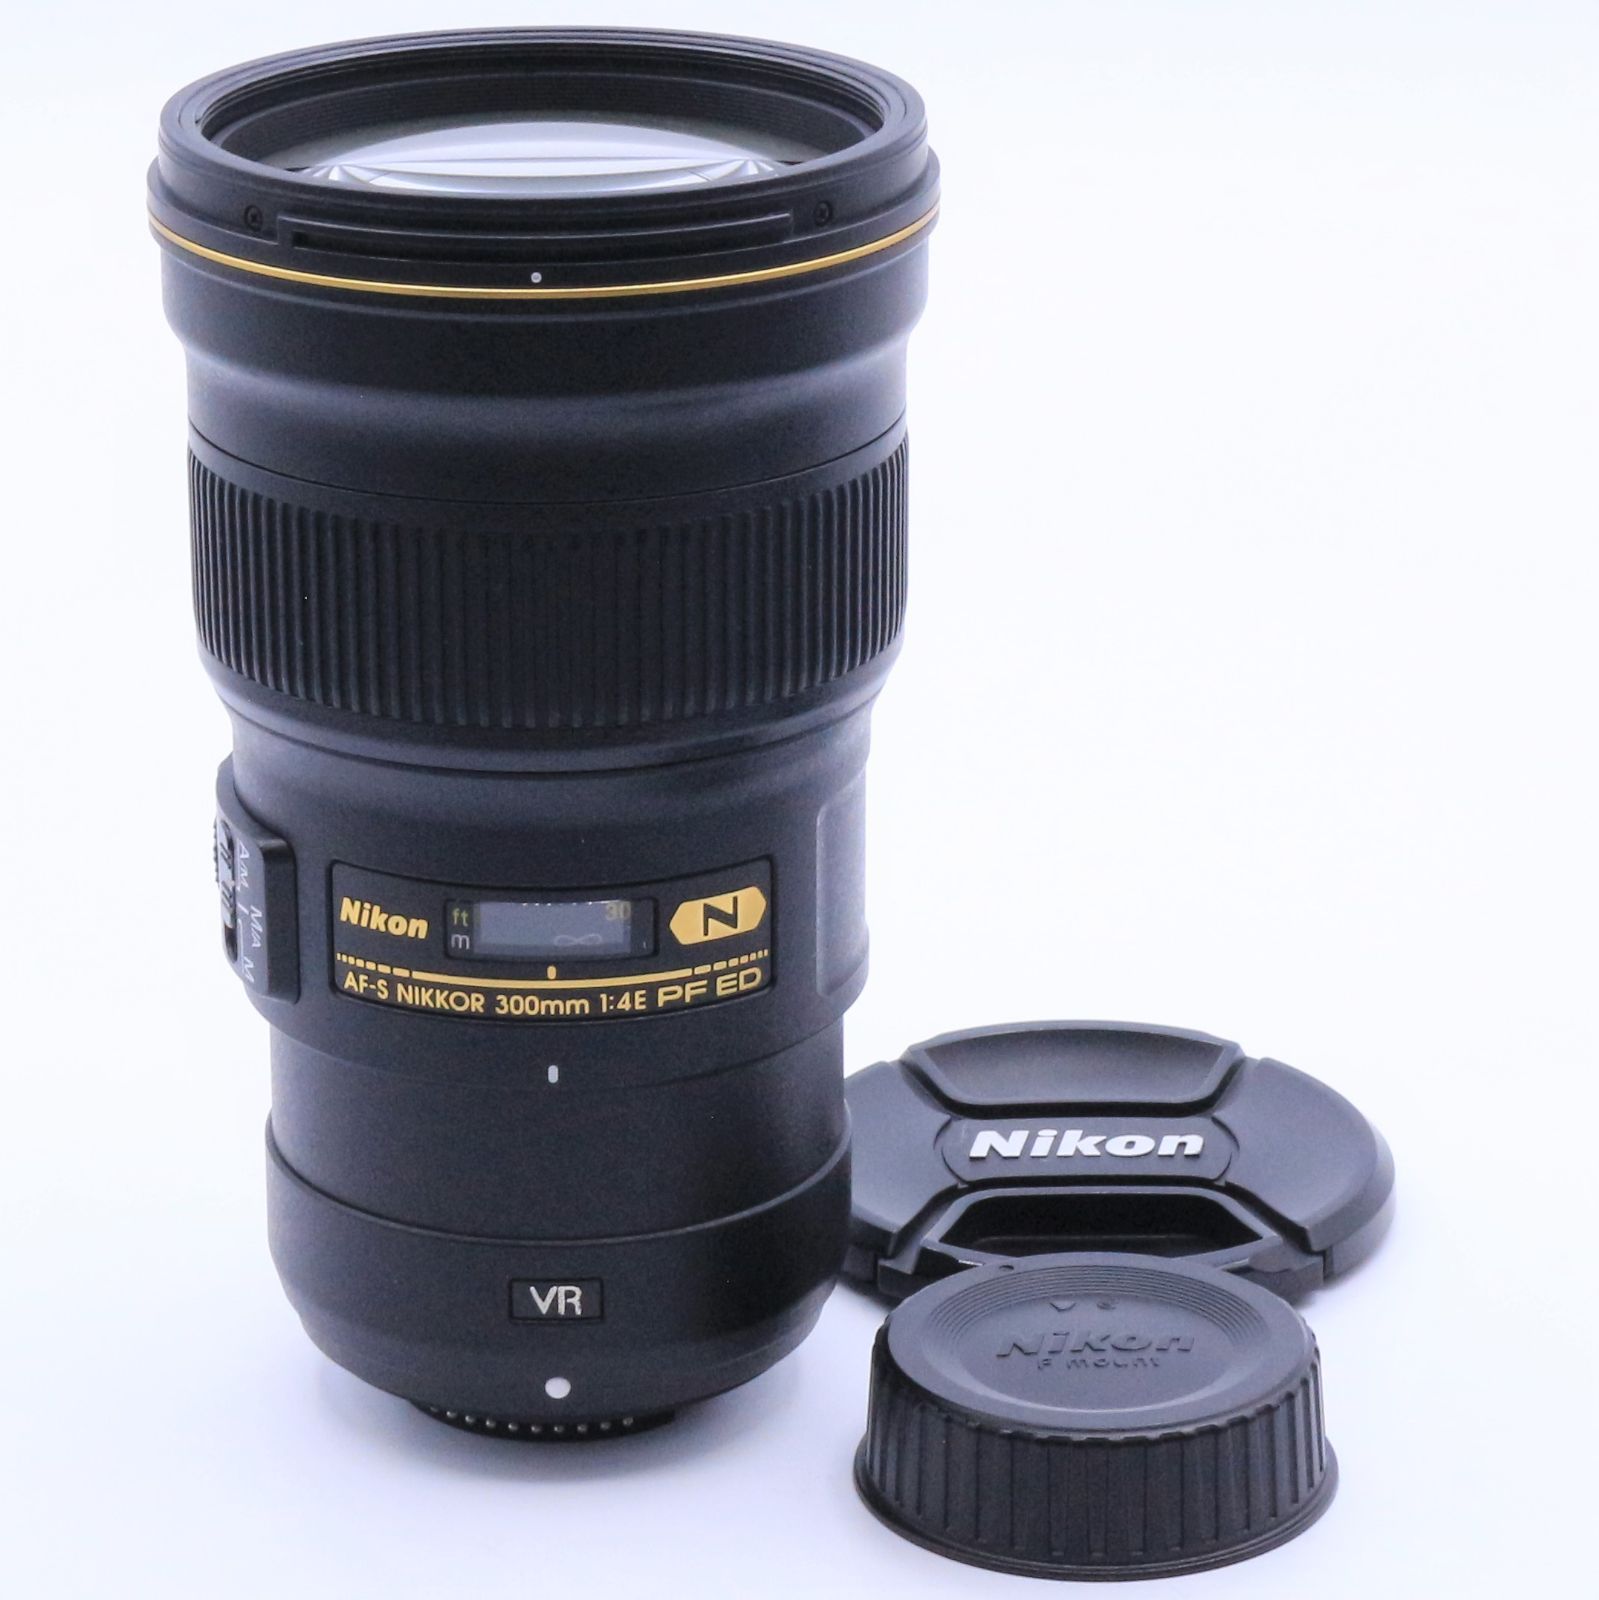 Nikon 単焦点レンズ AF-S NIKKOR 300mm f/4E PF ED VR フルサイズ対応